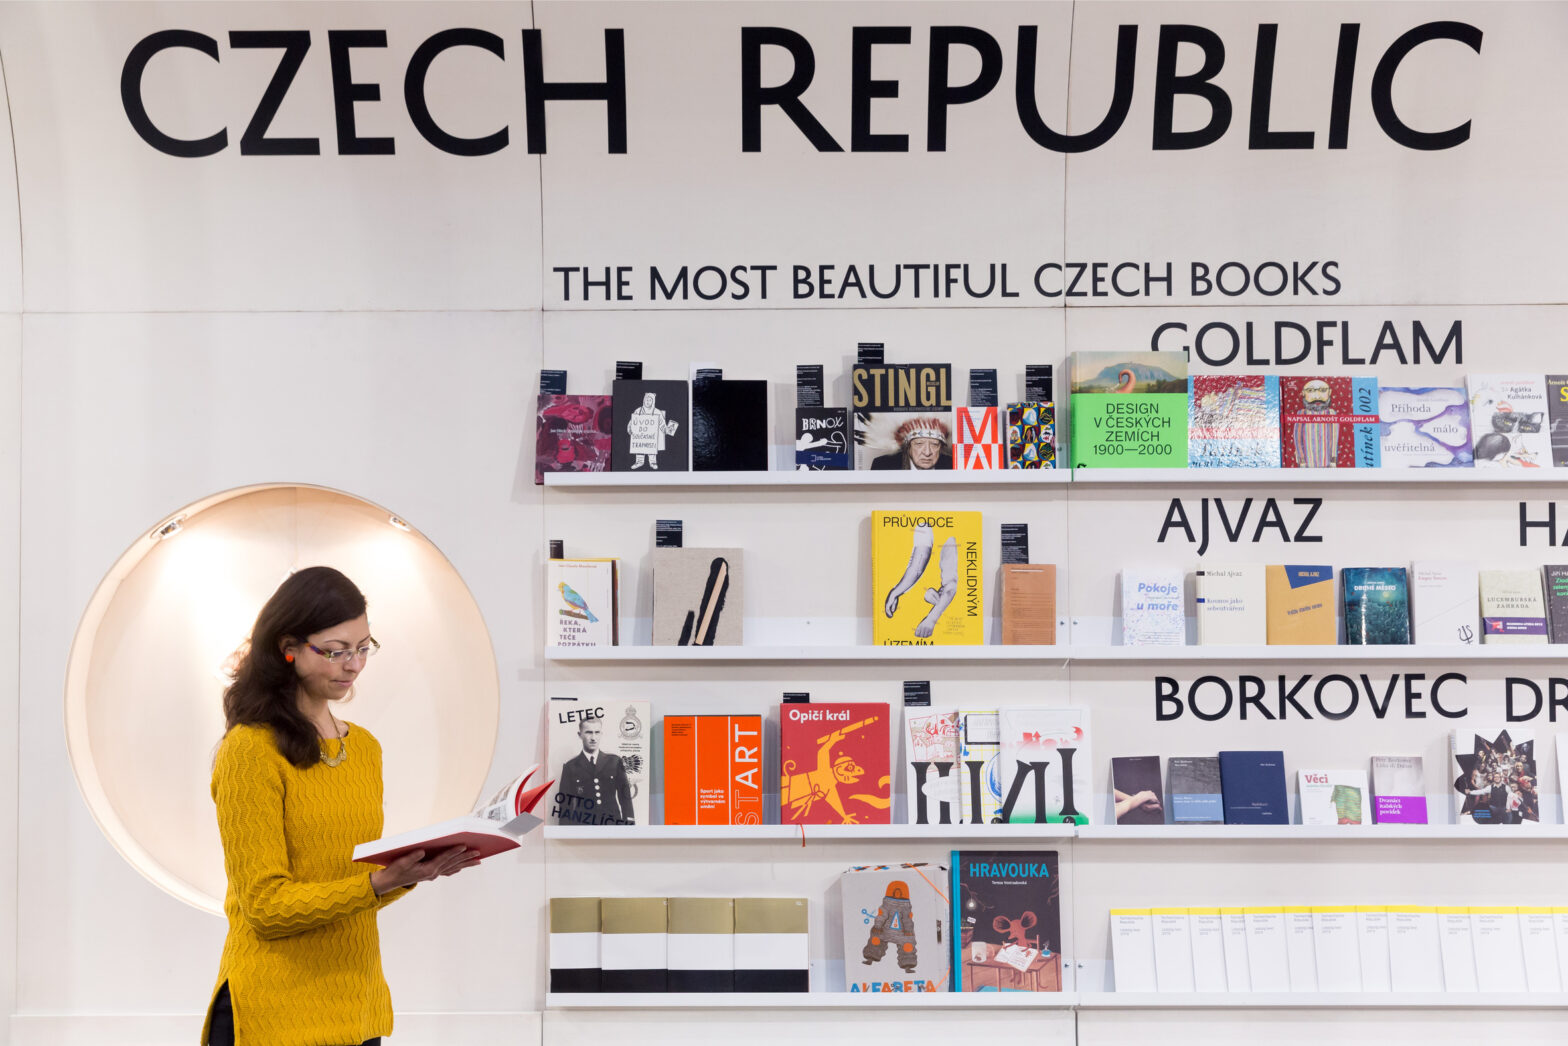 Tschechien ist dieses Jahr Gastland der Leipziger Buchmesse und bestimmt das Programm. / Foto: Pressebild Leipziger Buchmesse